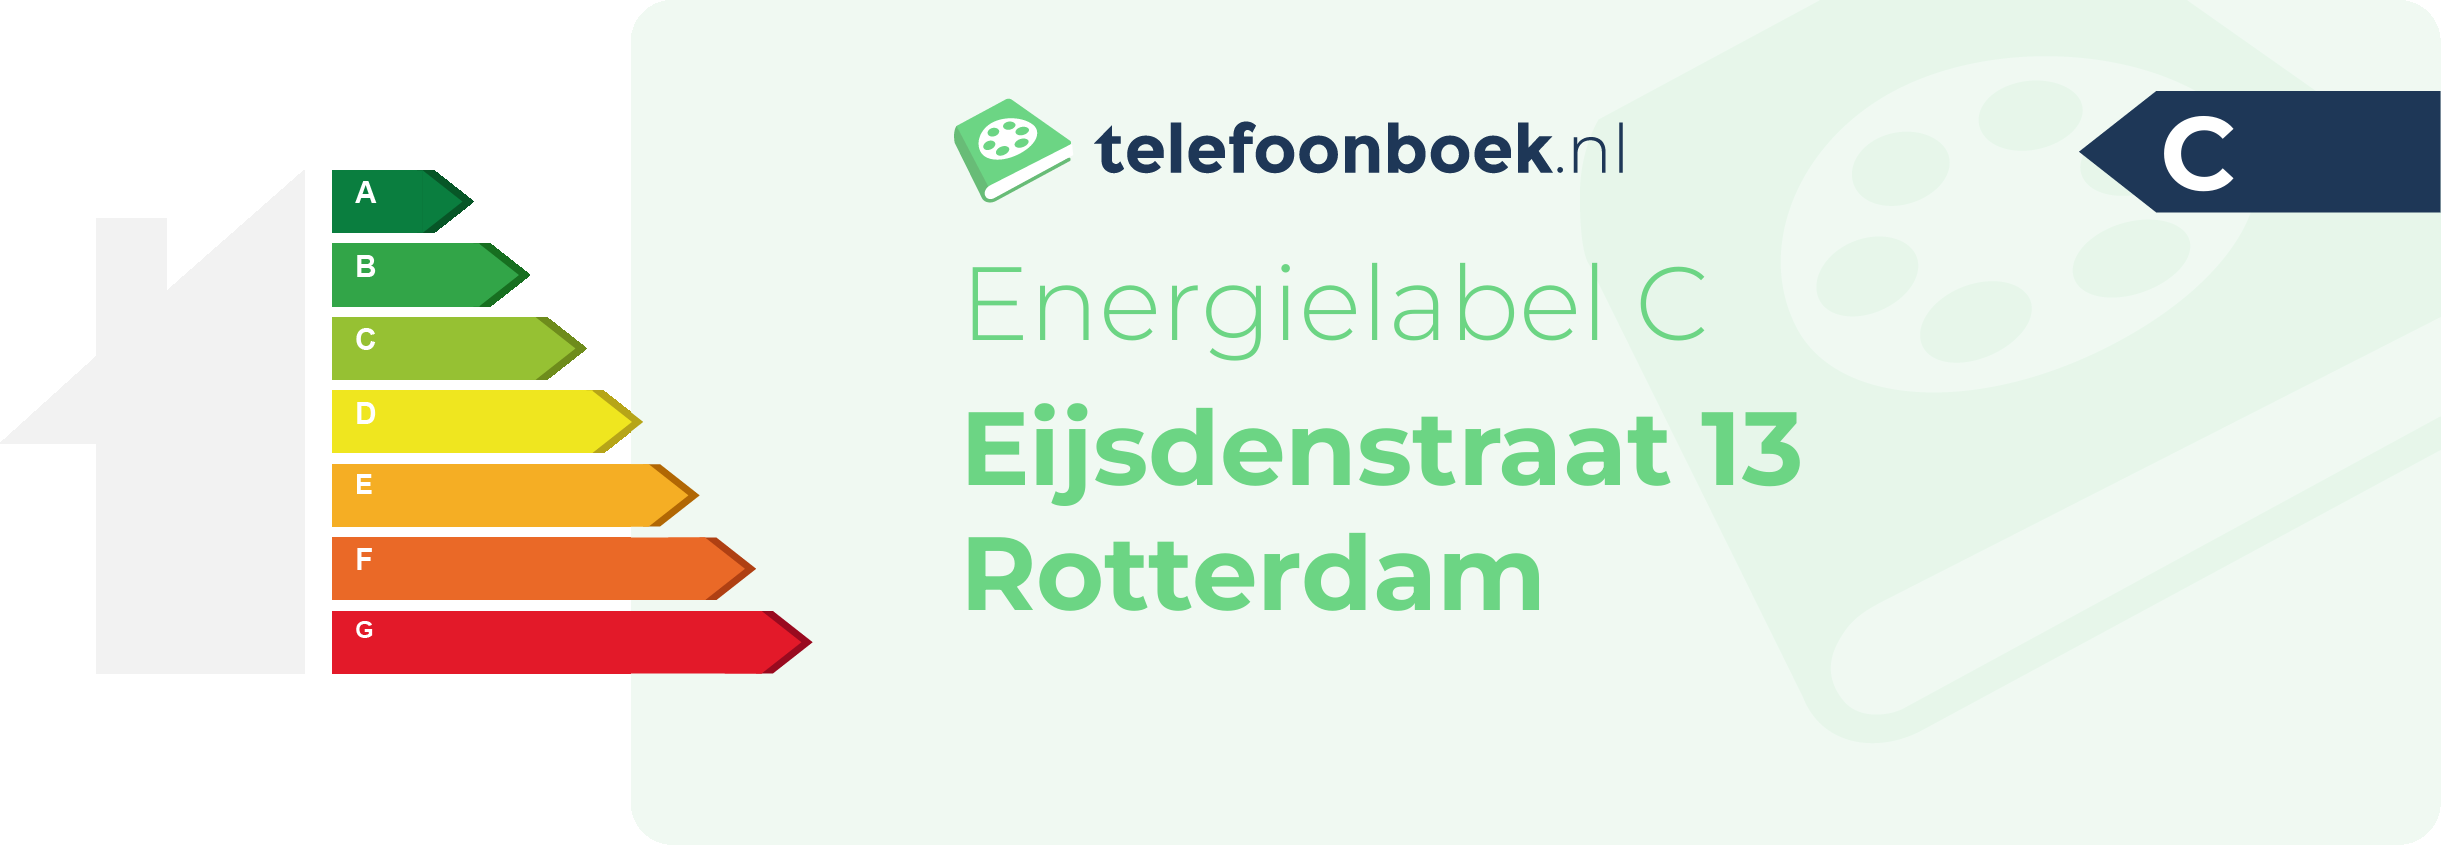 Energielabel Eijsdenstraat 13 Rotterdam